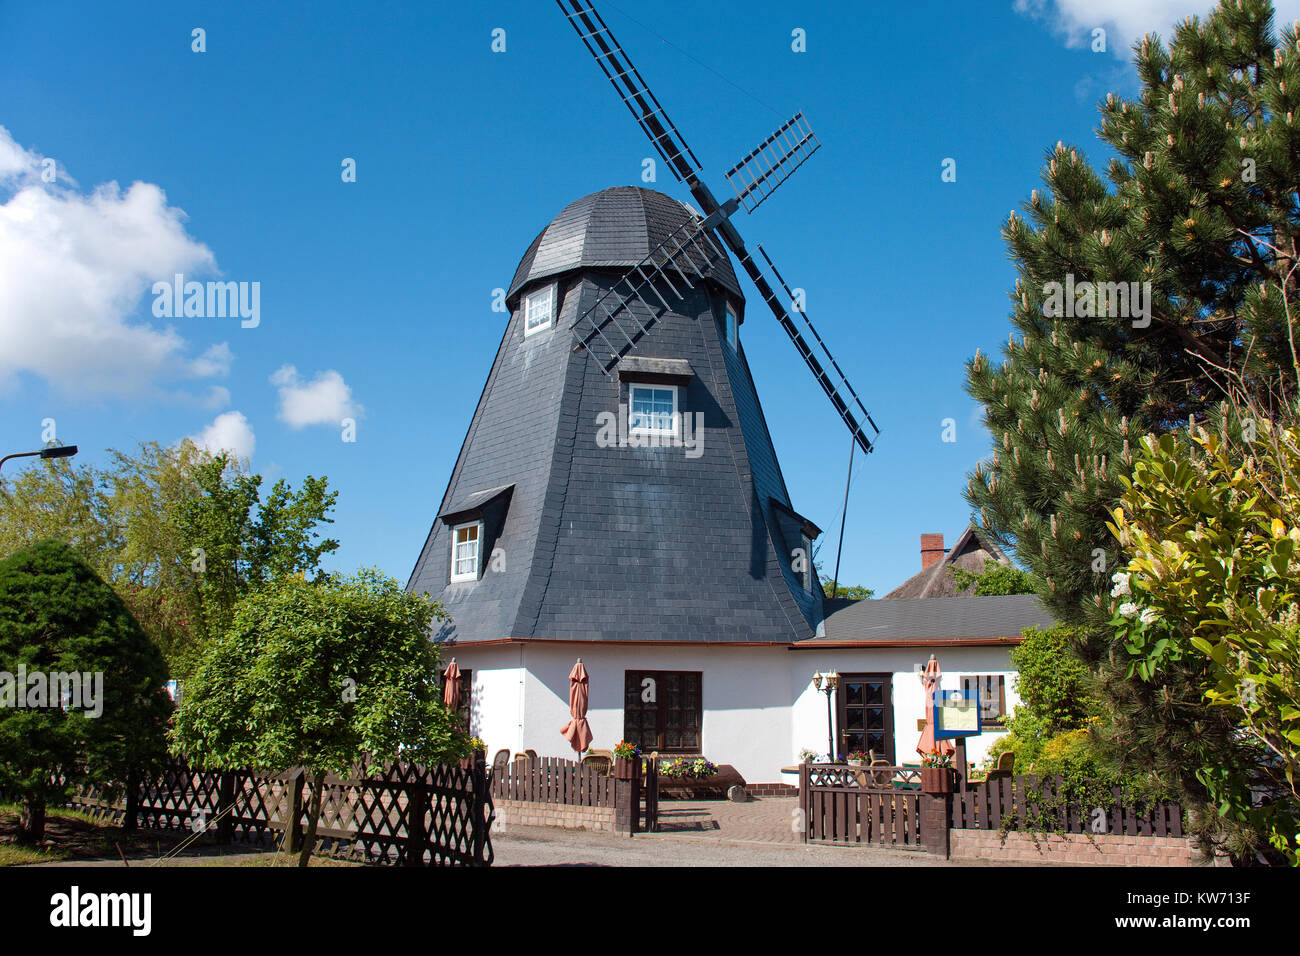 Restaurant und Cafe Muehlenstube" in einer alten Windmühle, Dorf Geboren am Darss, Fischland, Mecklenburg-Vorpommern, Ostsee, Deutschland, Europa Stockfoto